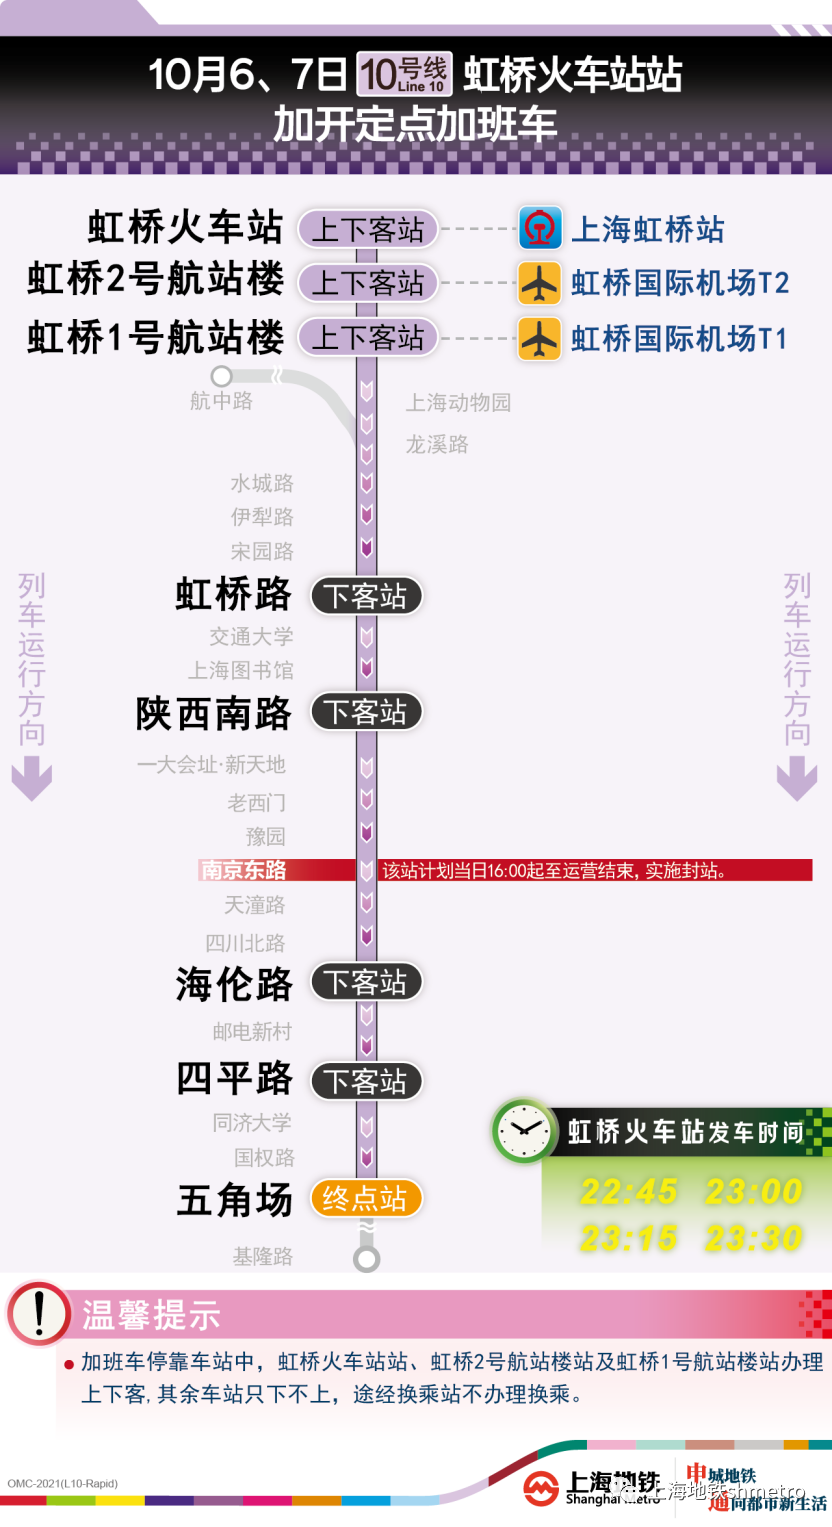 上海出城车流高峰将至，G40高东收费口三个时段或拥堵；部分城市首套住房贷款利率下限阶段性放宽丨早读